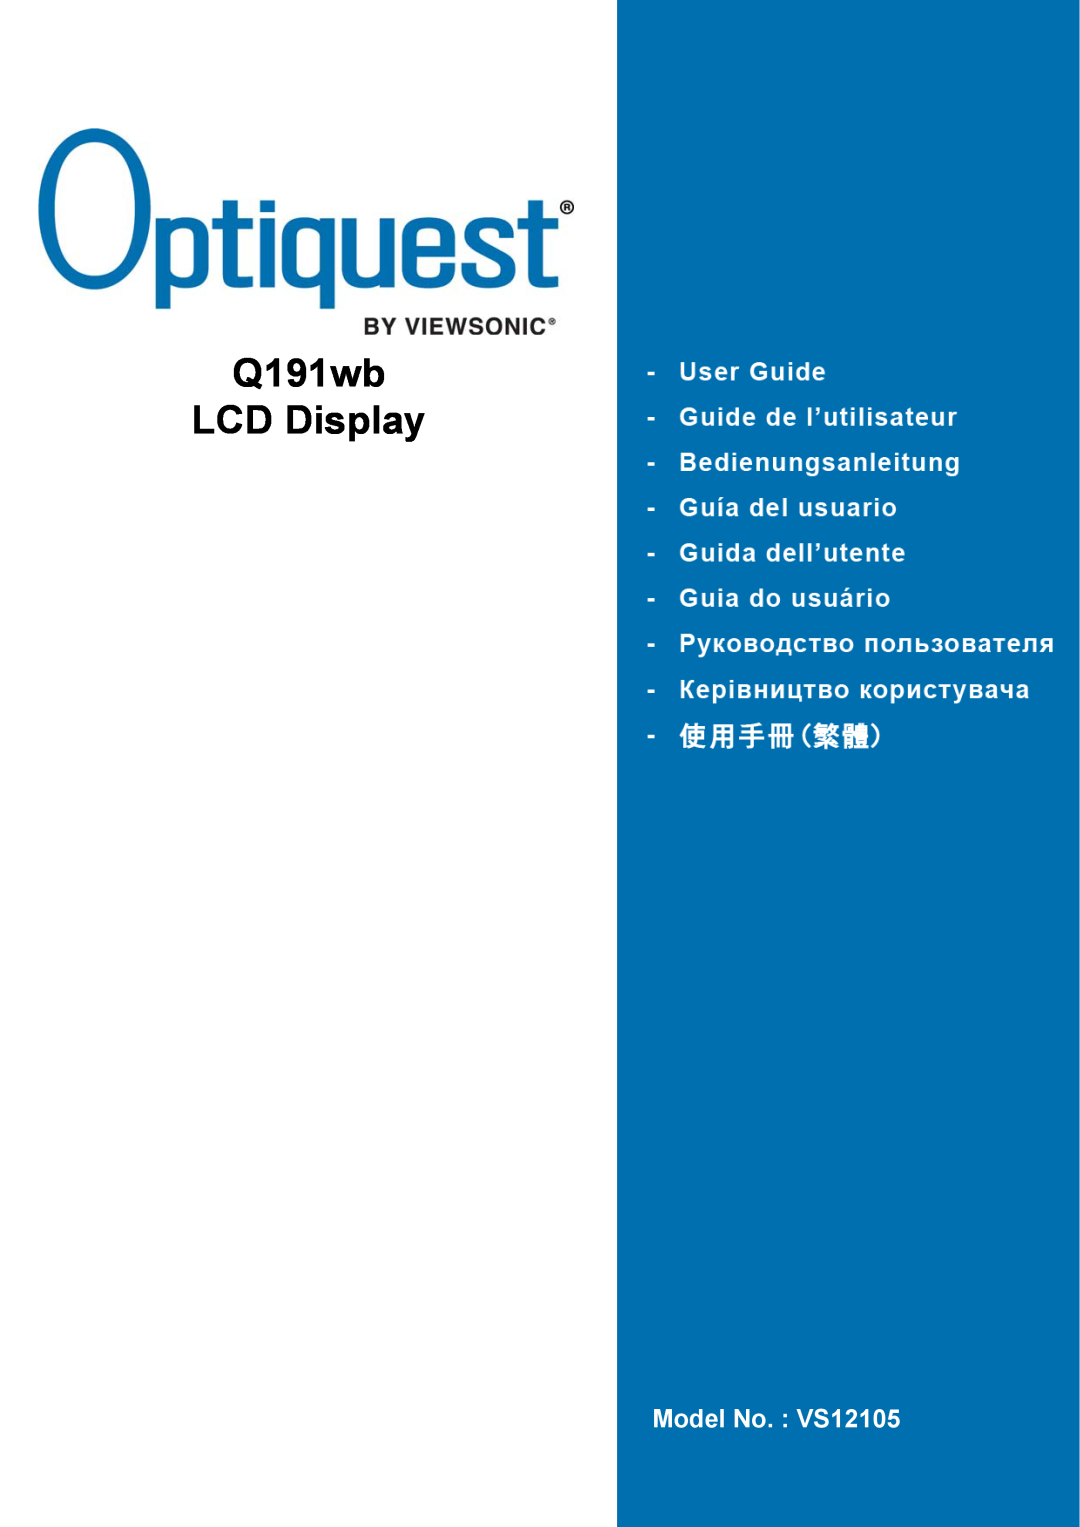 ViewSonic Q191WB manual Q191wb LCD Display, Model No. VS12105 